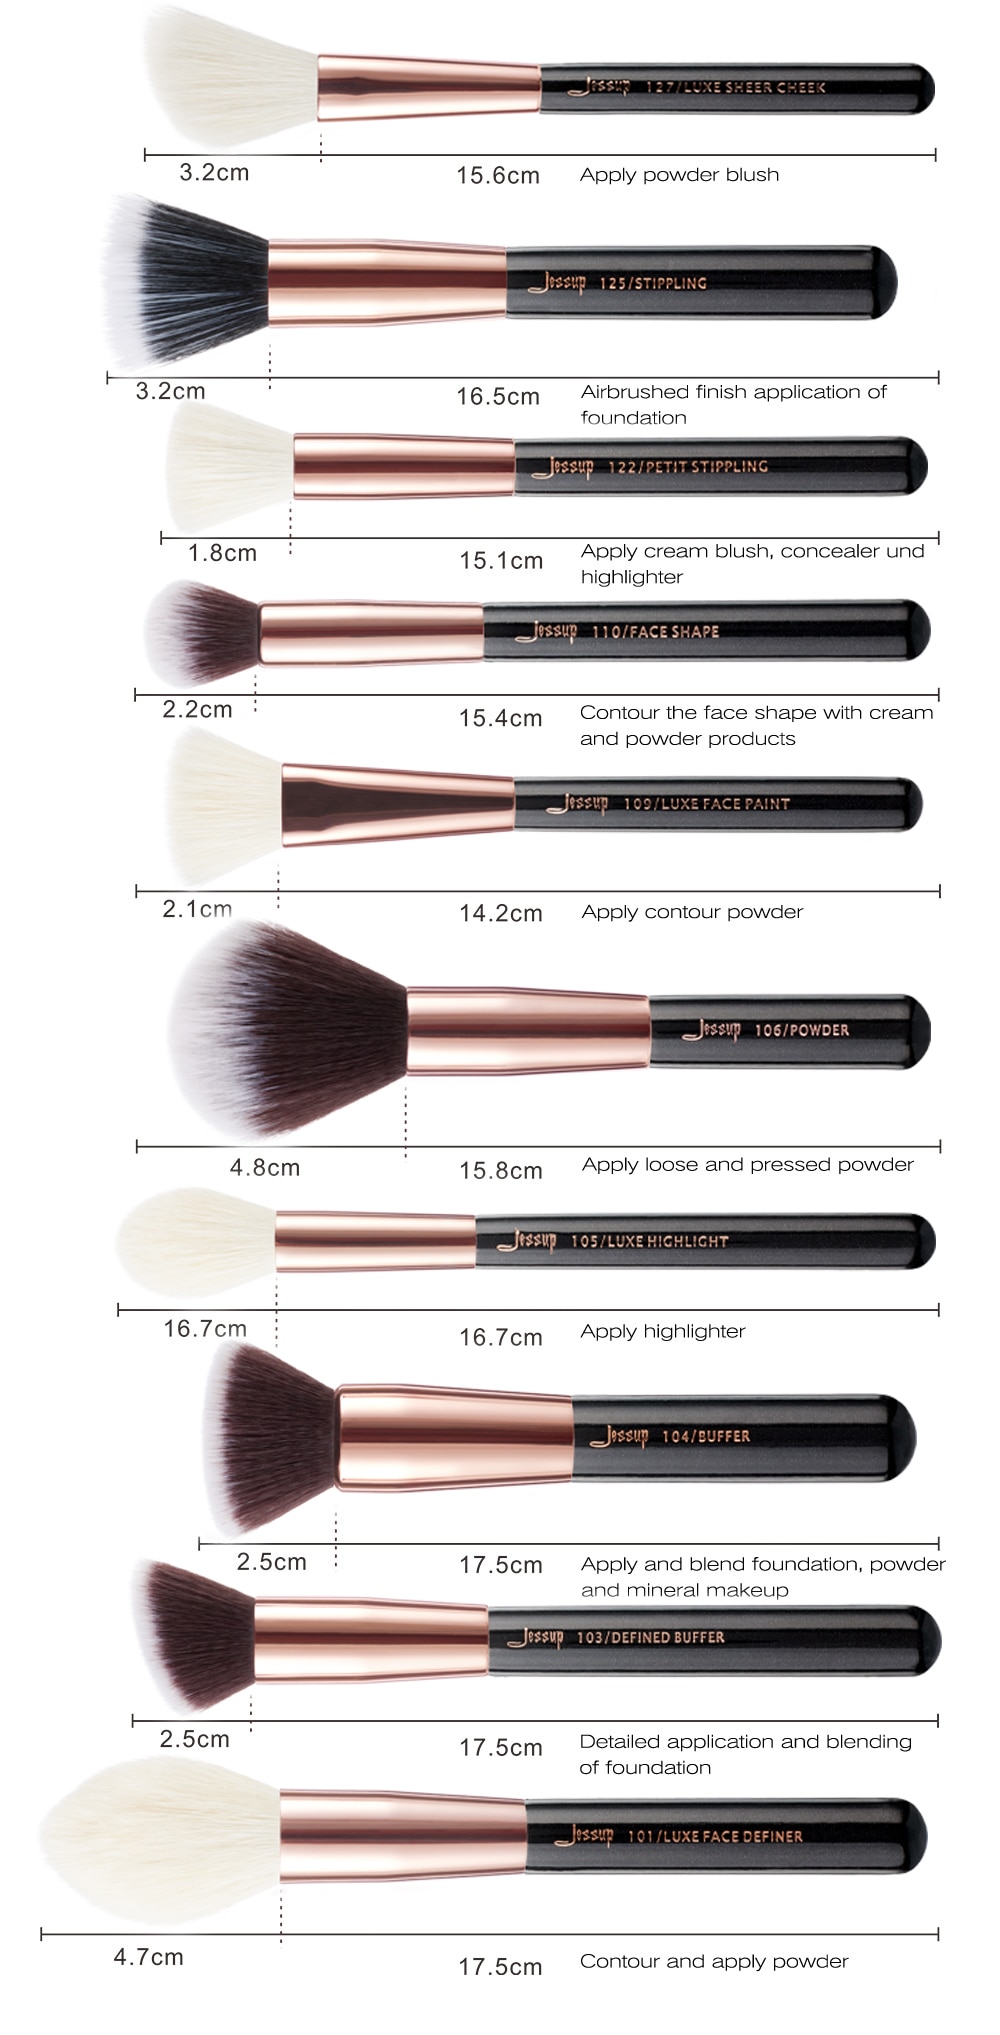 Jessup Rose Gold / Black Makeup brushes set